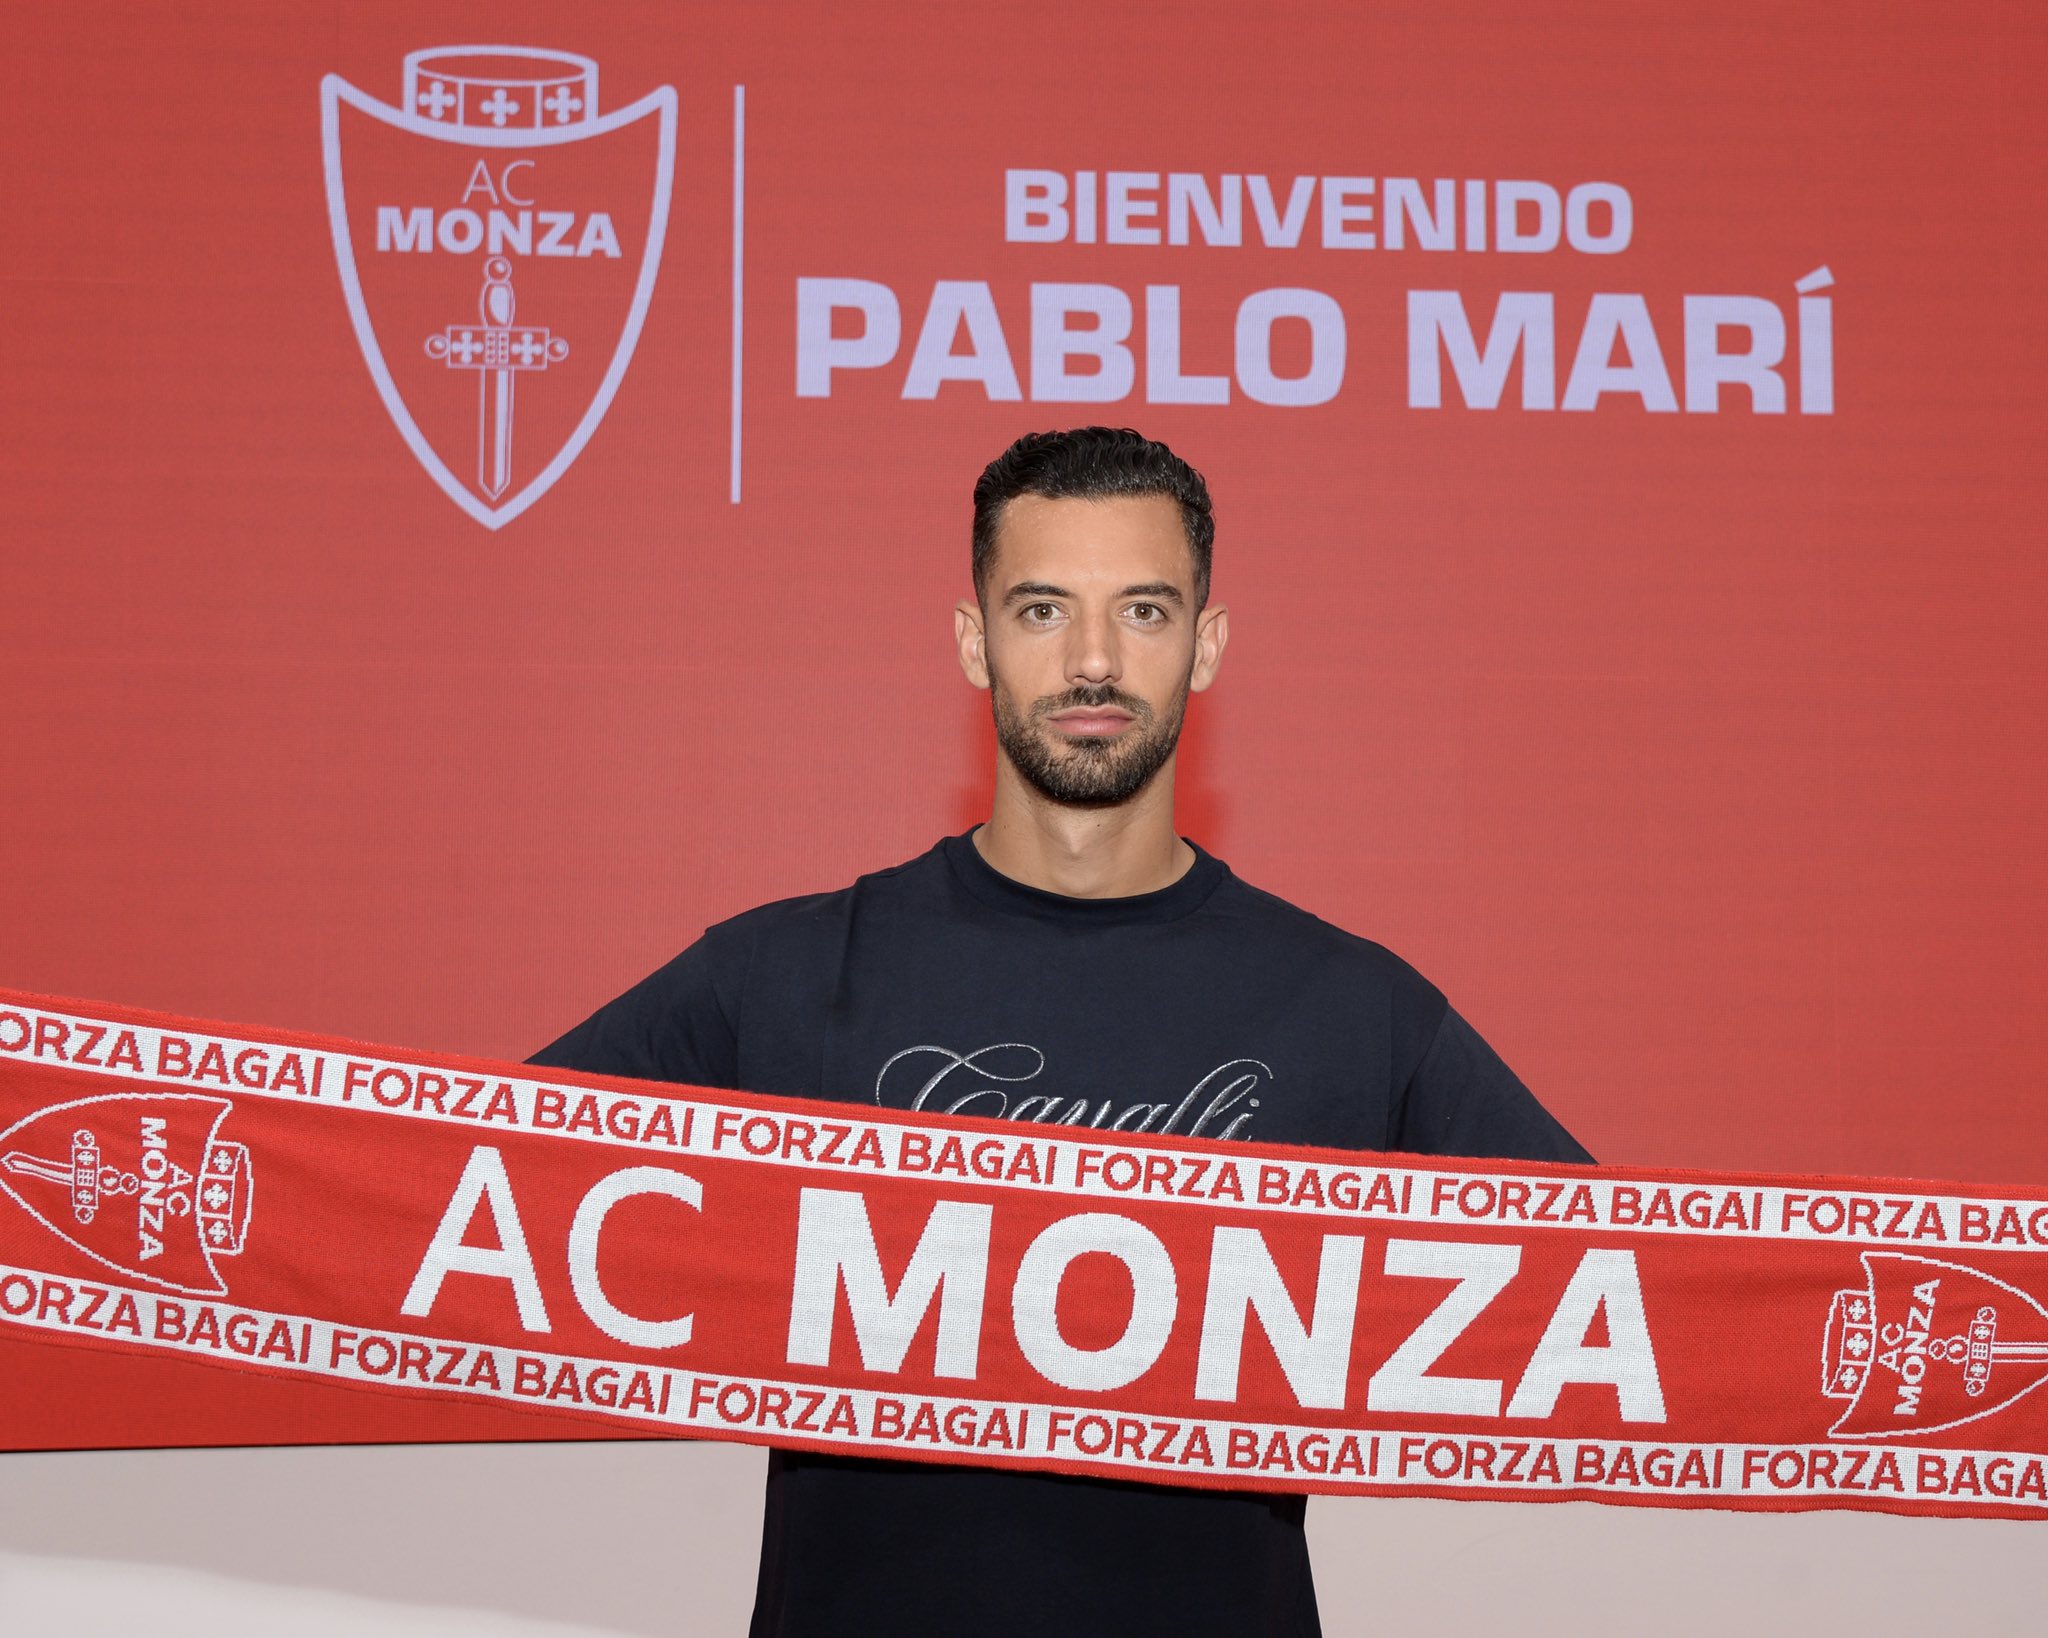 El jugador español, Pablo Marí, fue presentado por el Monza en agosto pasado. (Foto Prensa Libre: Pablo Marí/Twitter)